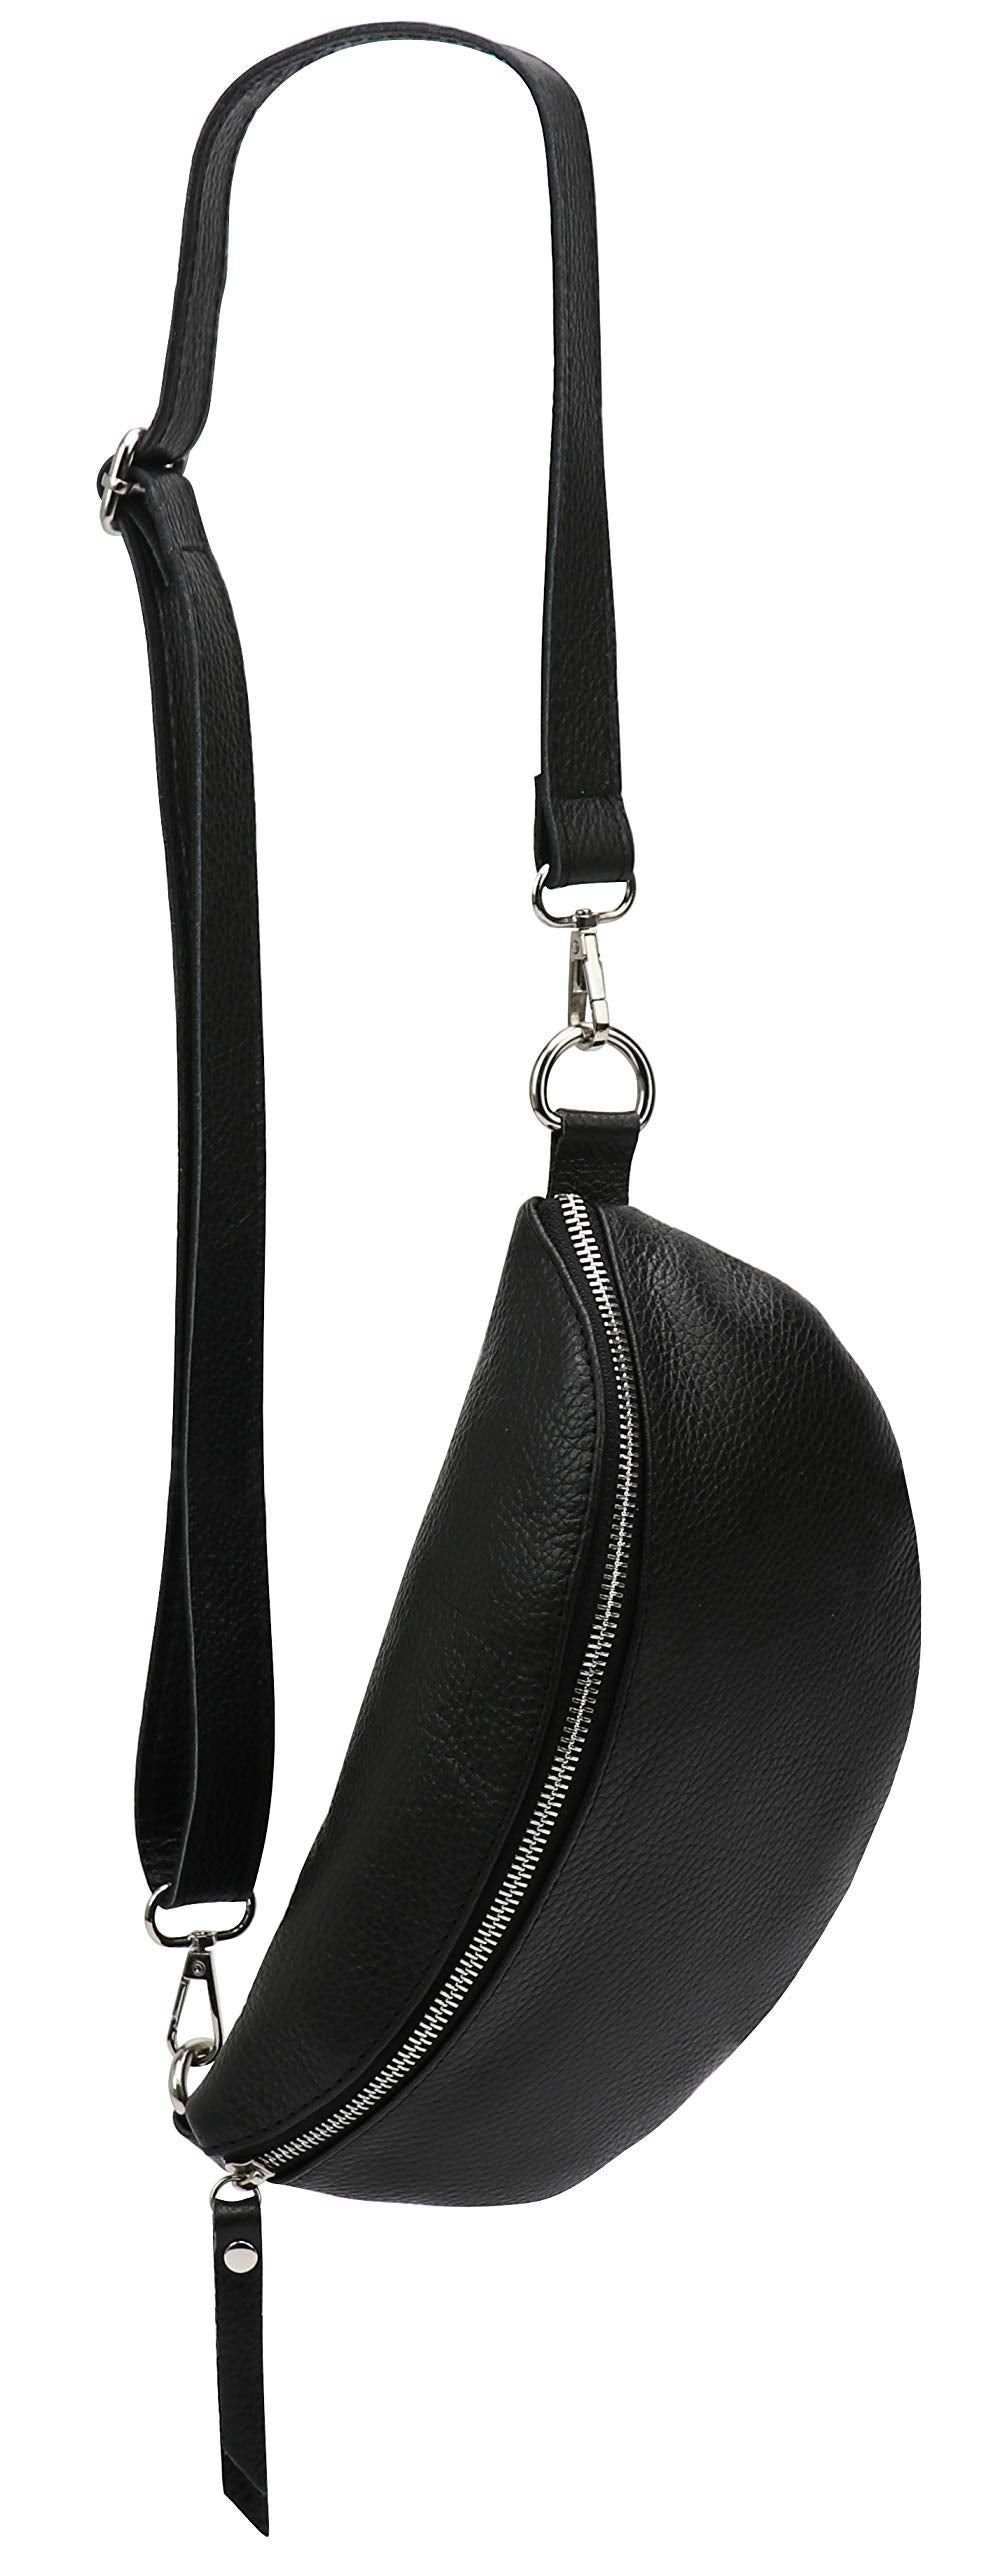 SH Leder ® Genuine Leather Waist Bag Women Men Unisex Belt Bag for Festival Travel Bum Bag Medium Crossbody Bag Women Leather Bag 27 x 15 cm Karla G359, black, M